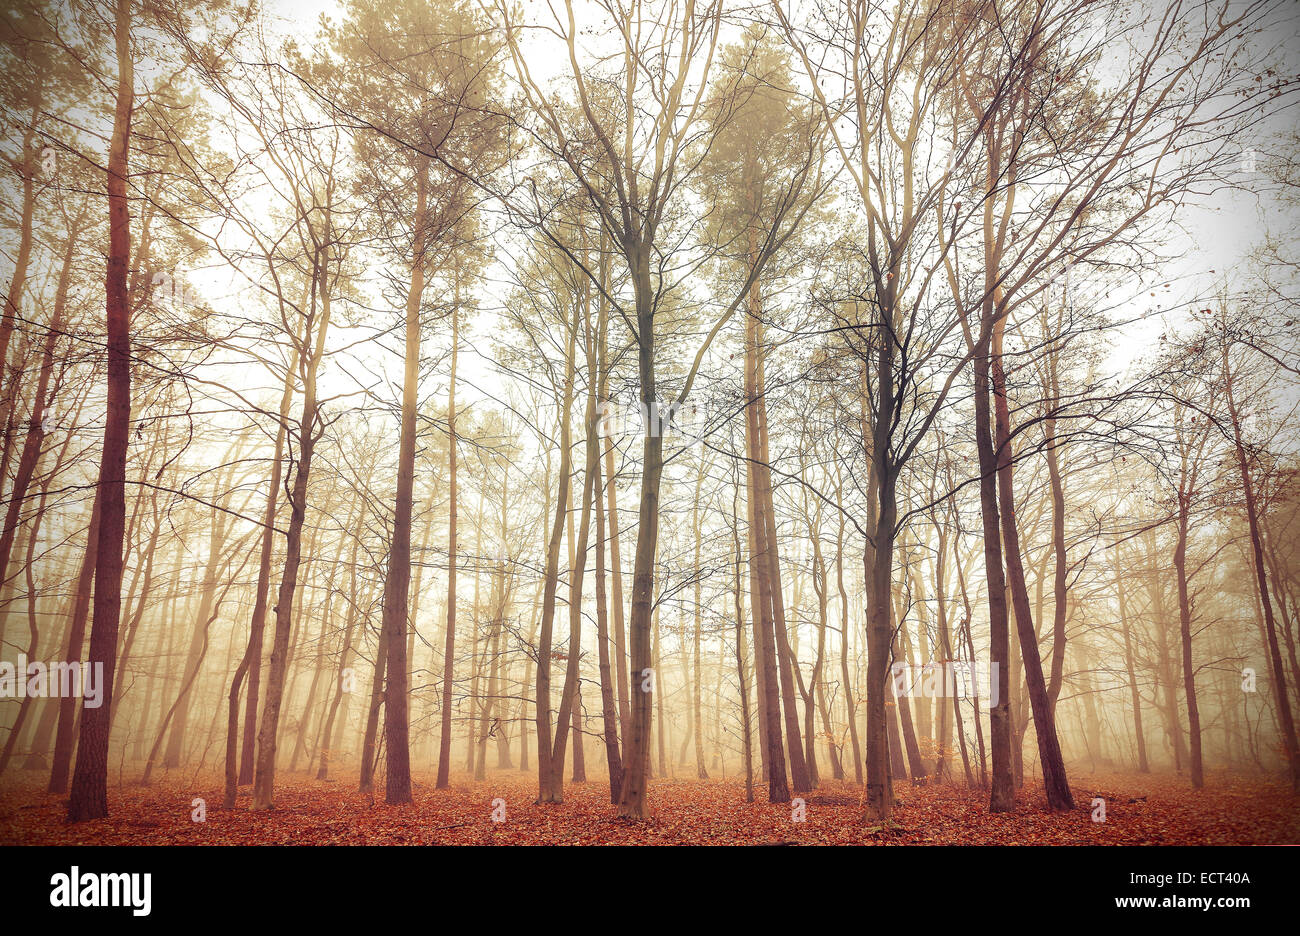 Retro-gefiltertes Bild von einem nebligen Wald. Stockfoto